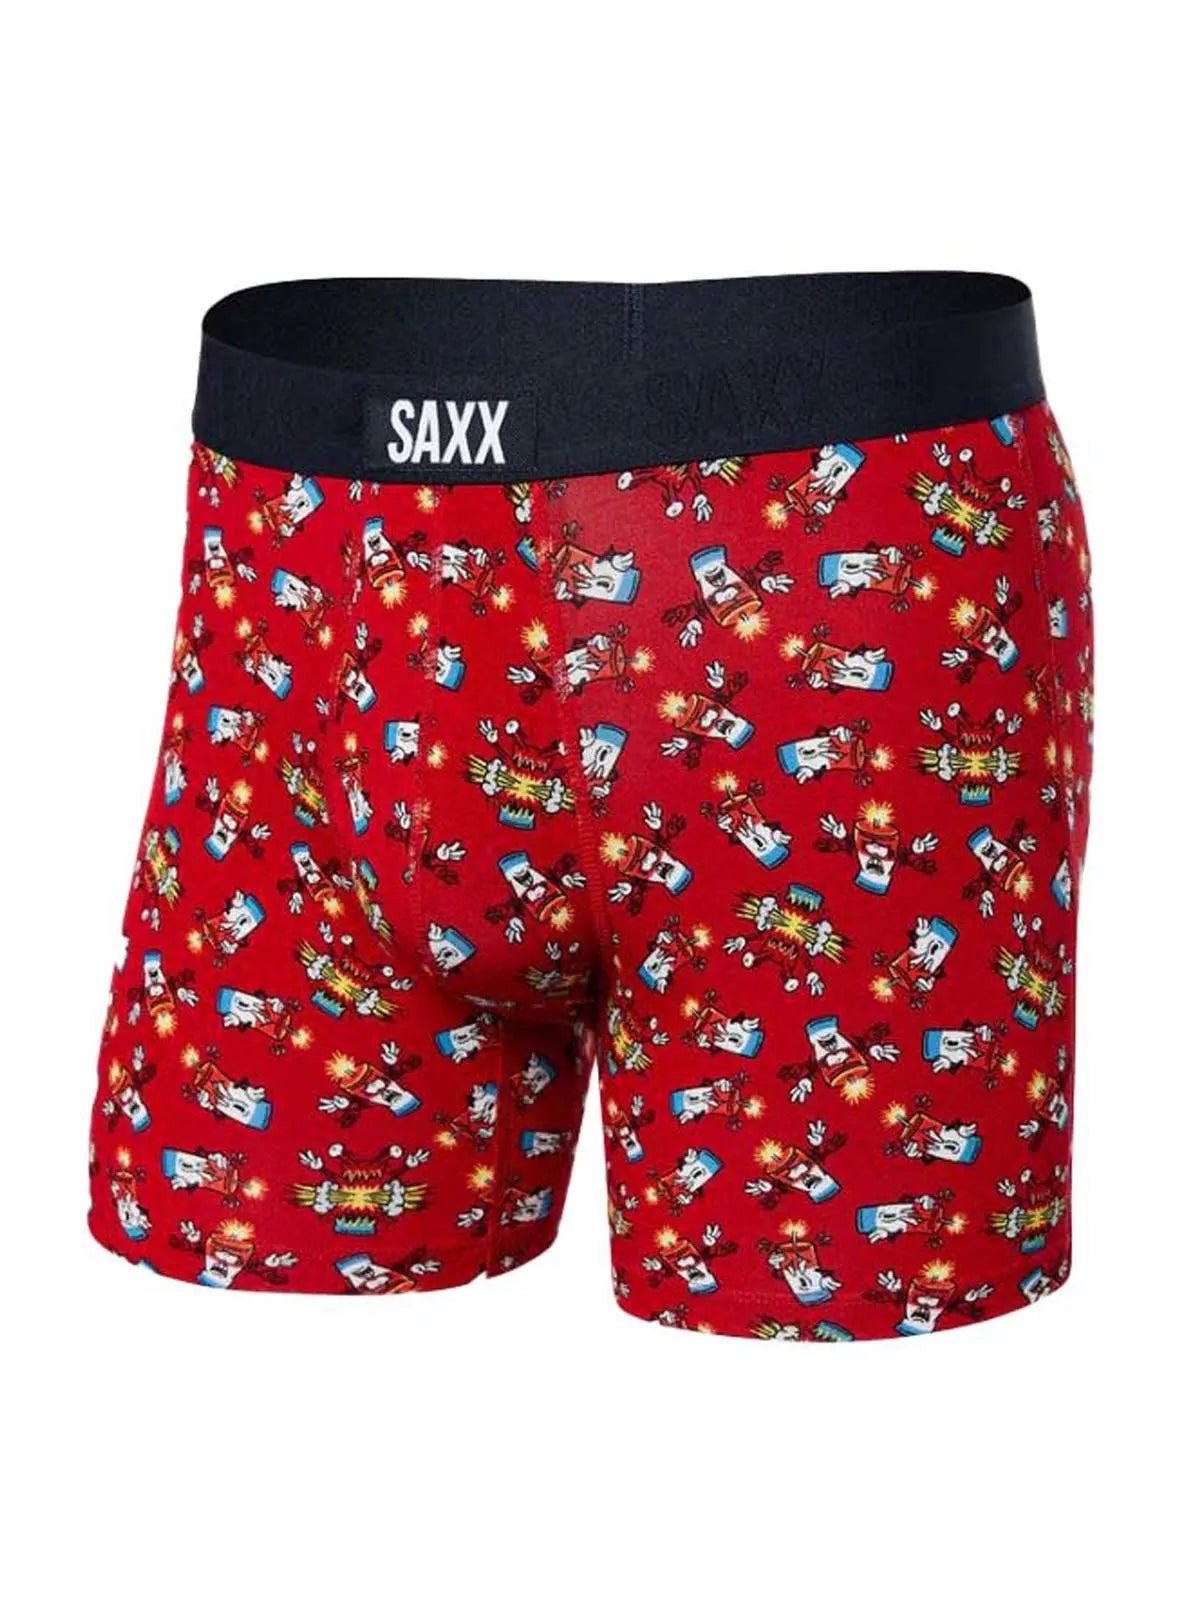 SAXX Big Bang Vibe Boxers